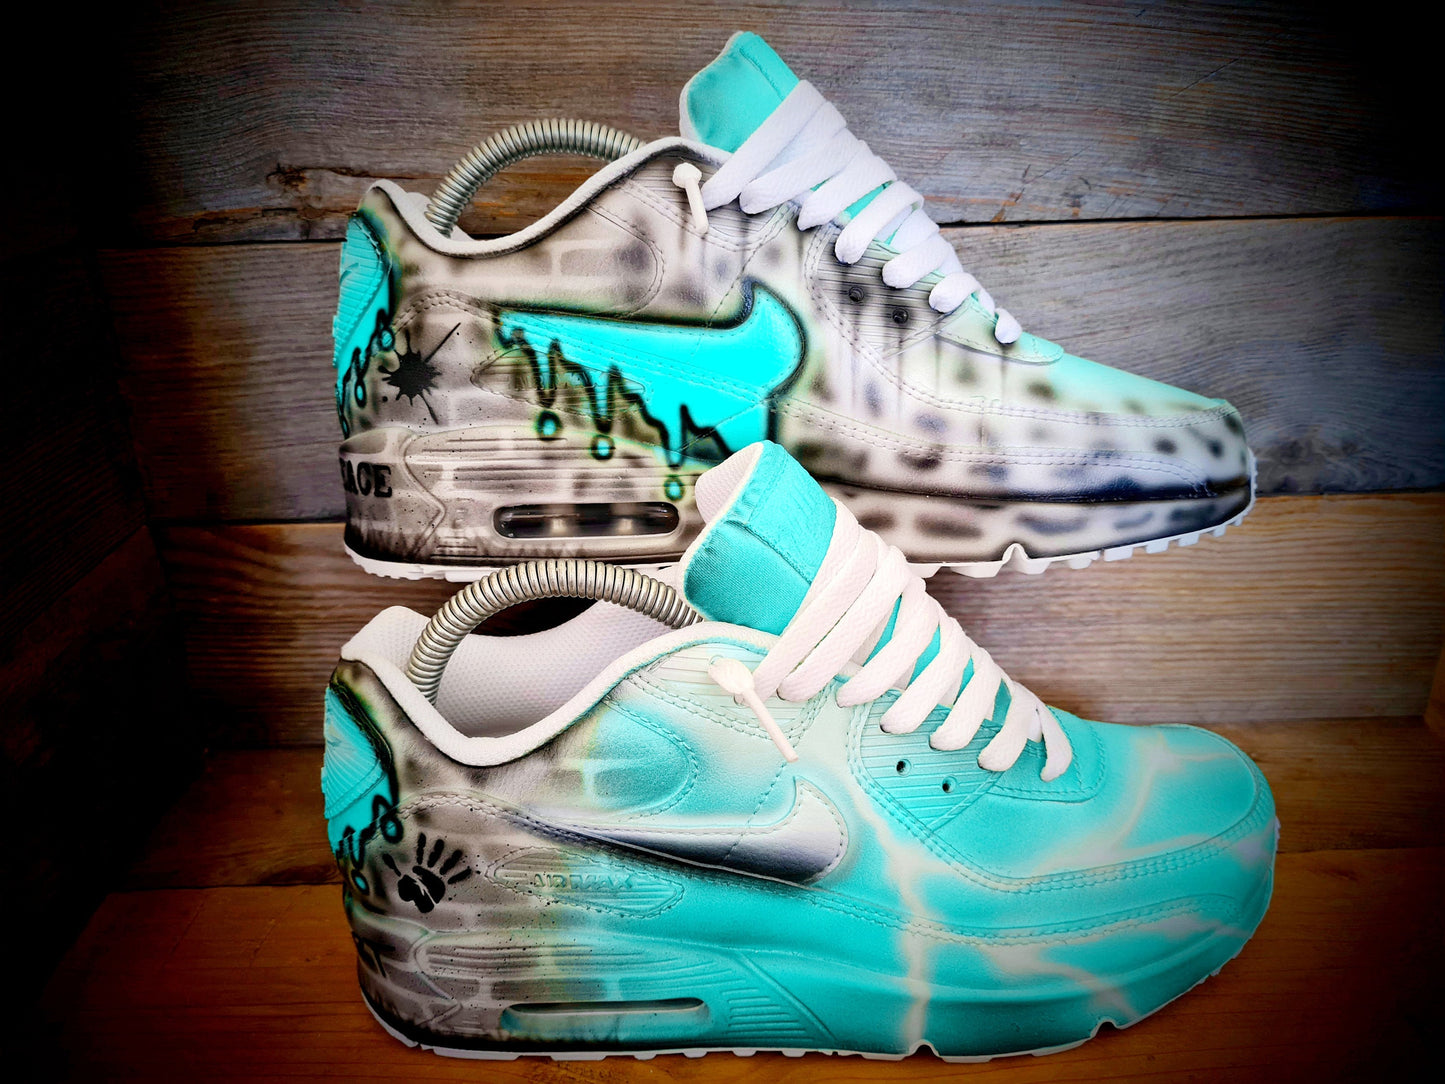 Custom Painted Air Max 90/Sneakers/Shoes/Kicks/Premium/Personalised/Aqua Brick Art